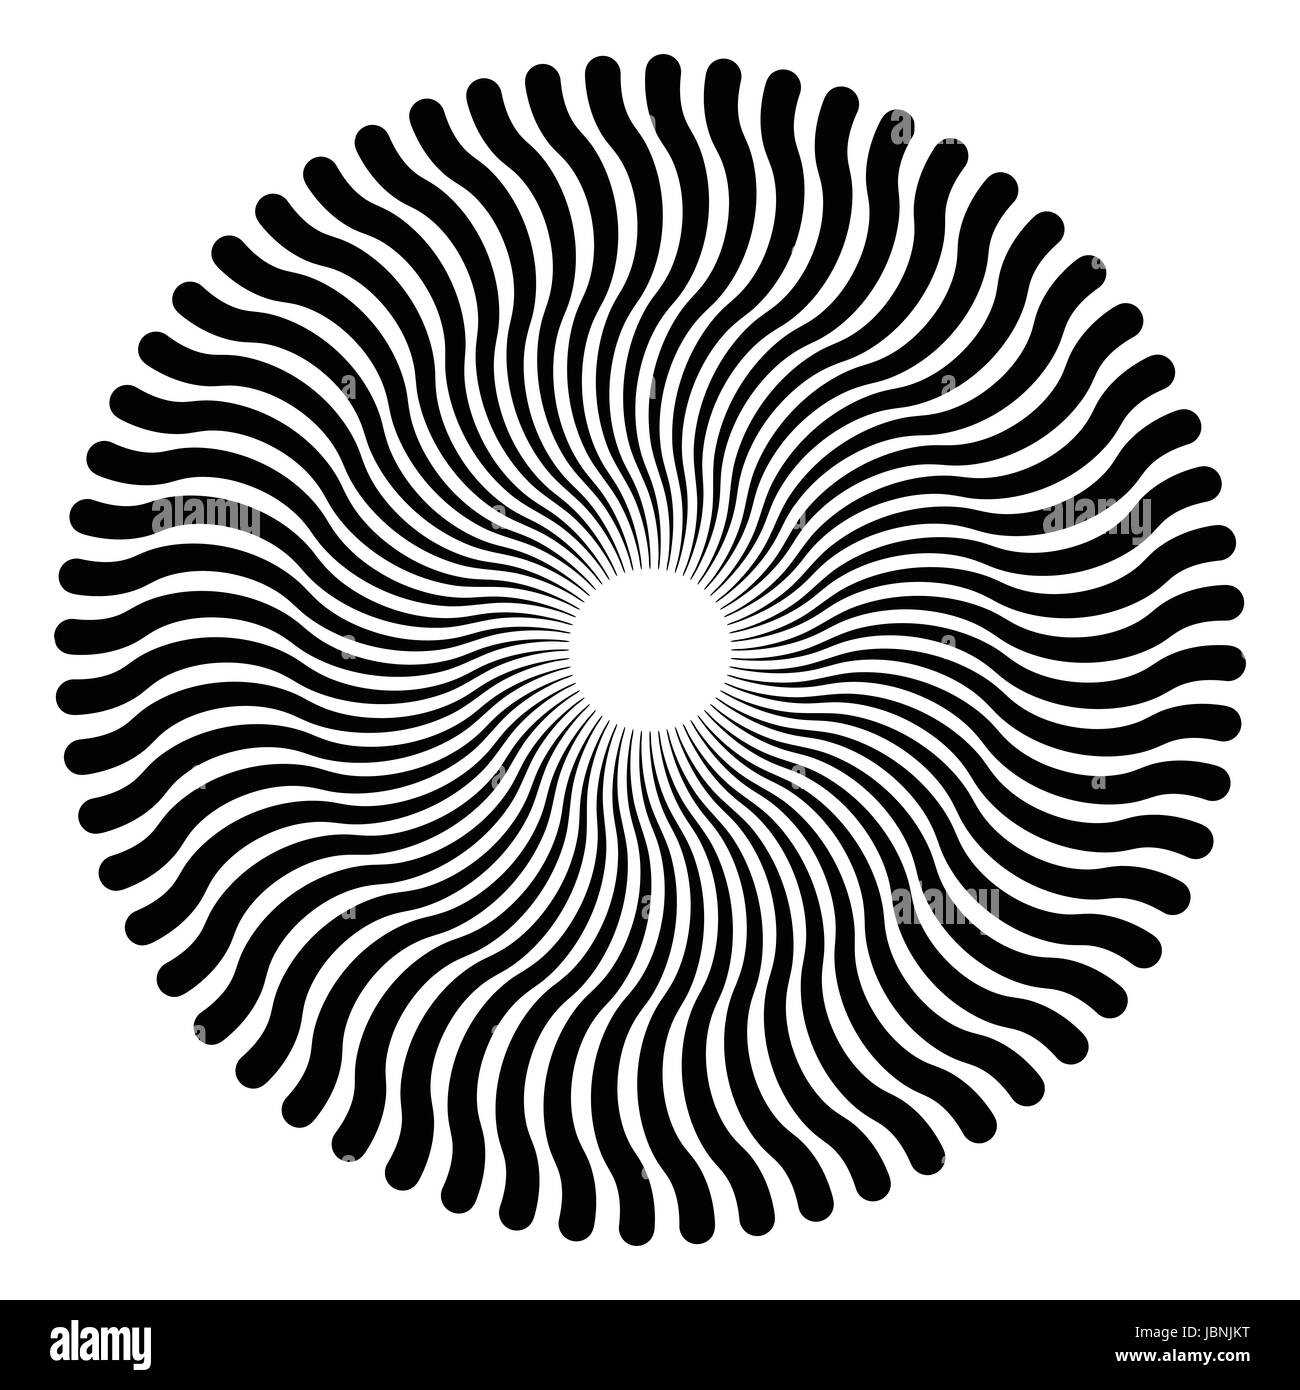 Líneas serpentina formando un patrón circular y un efecto tridimensional. El modelo crea una ilusión óptica como si se está moviendo. Foto de stock